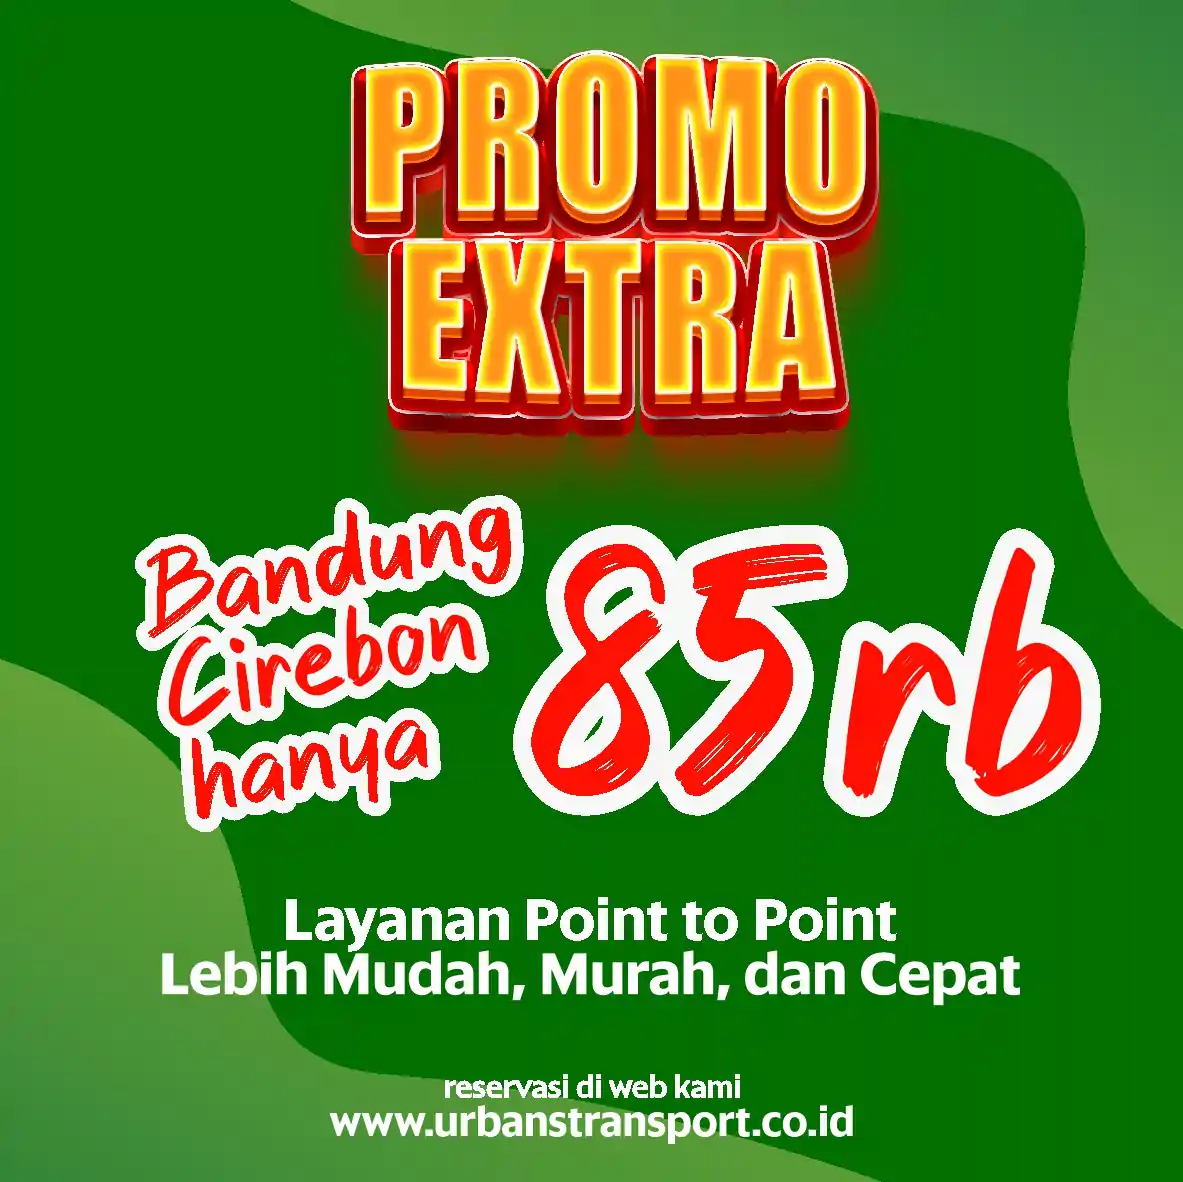 Promo Bandung Cirebon